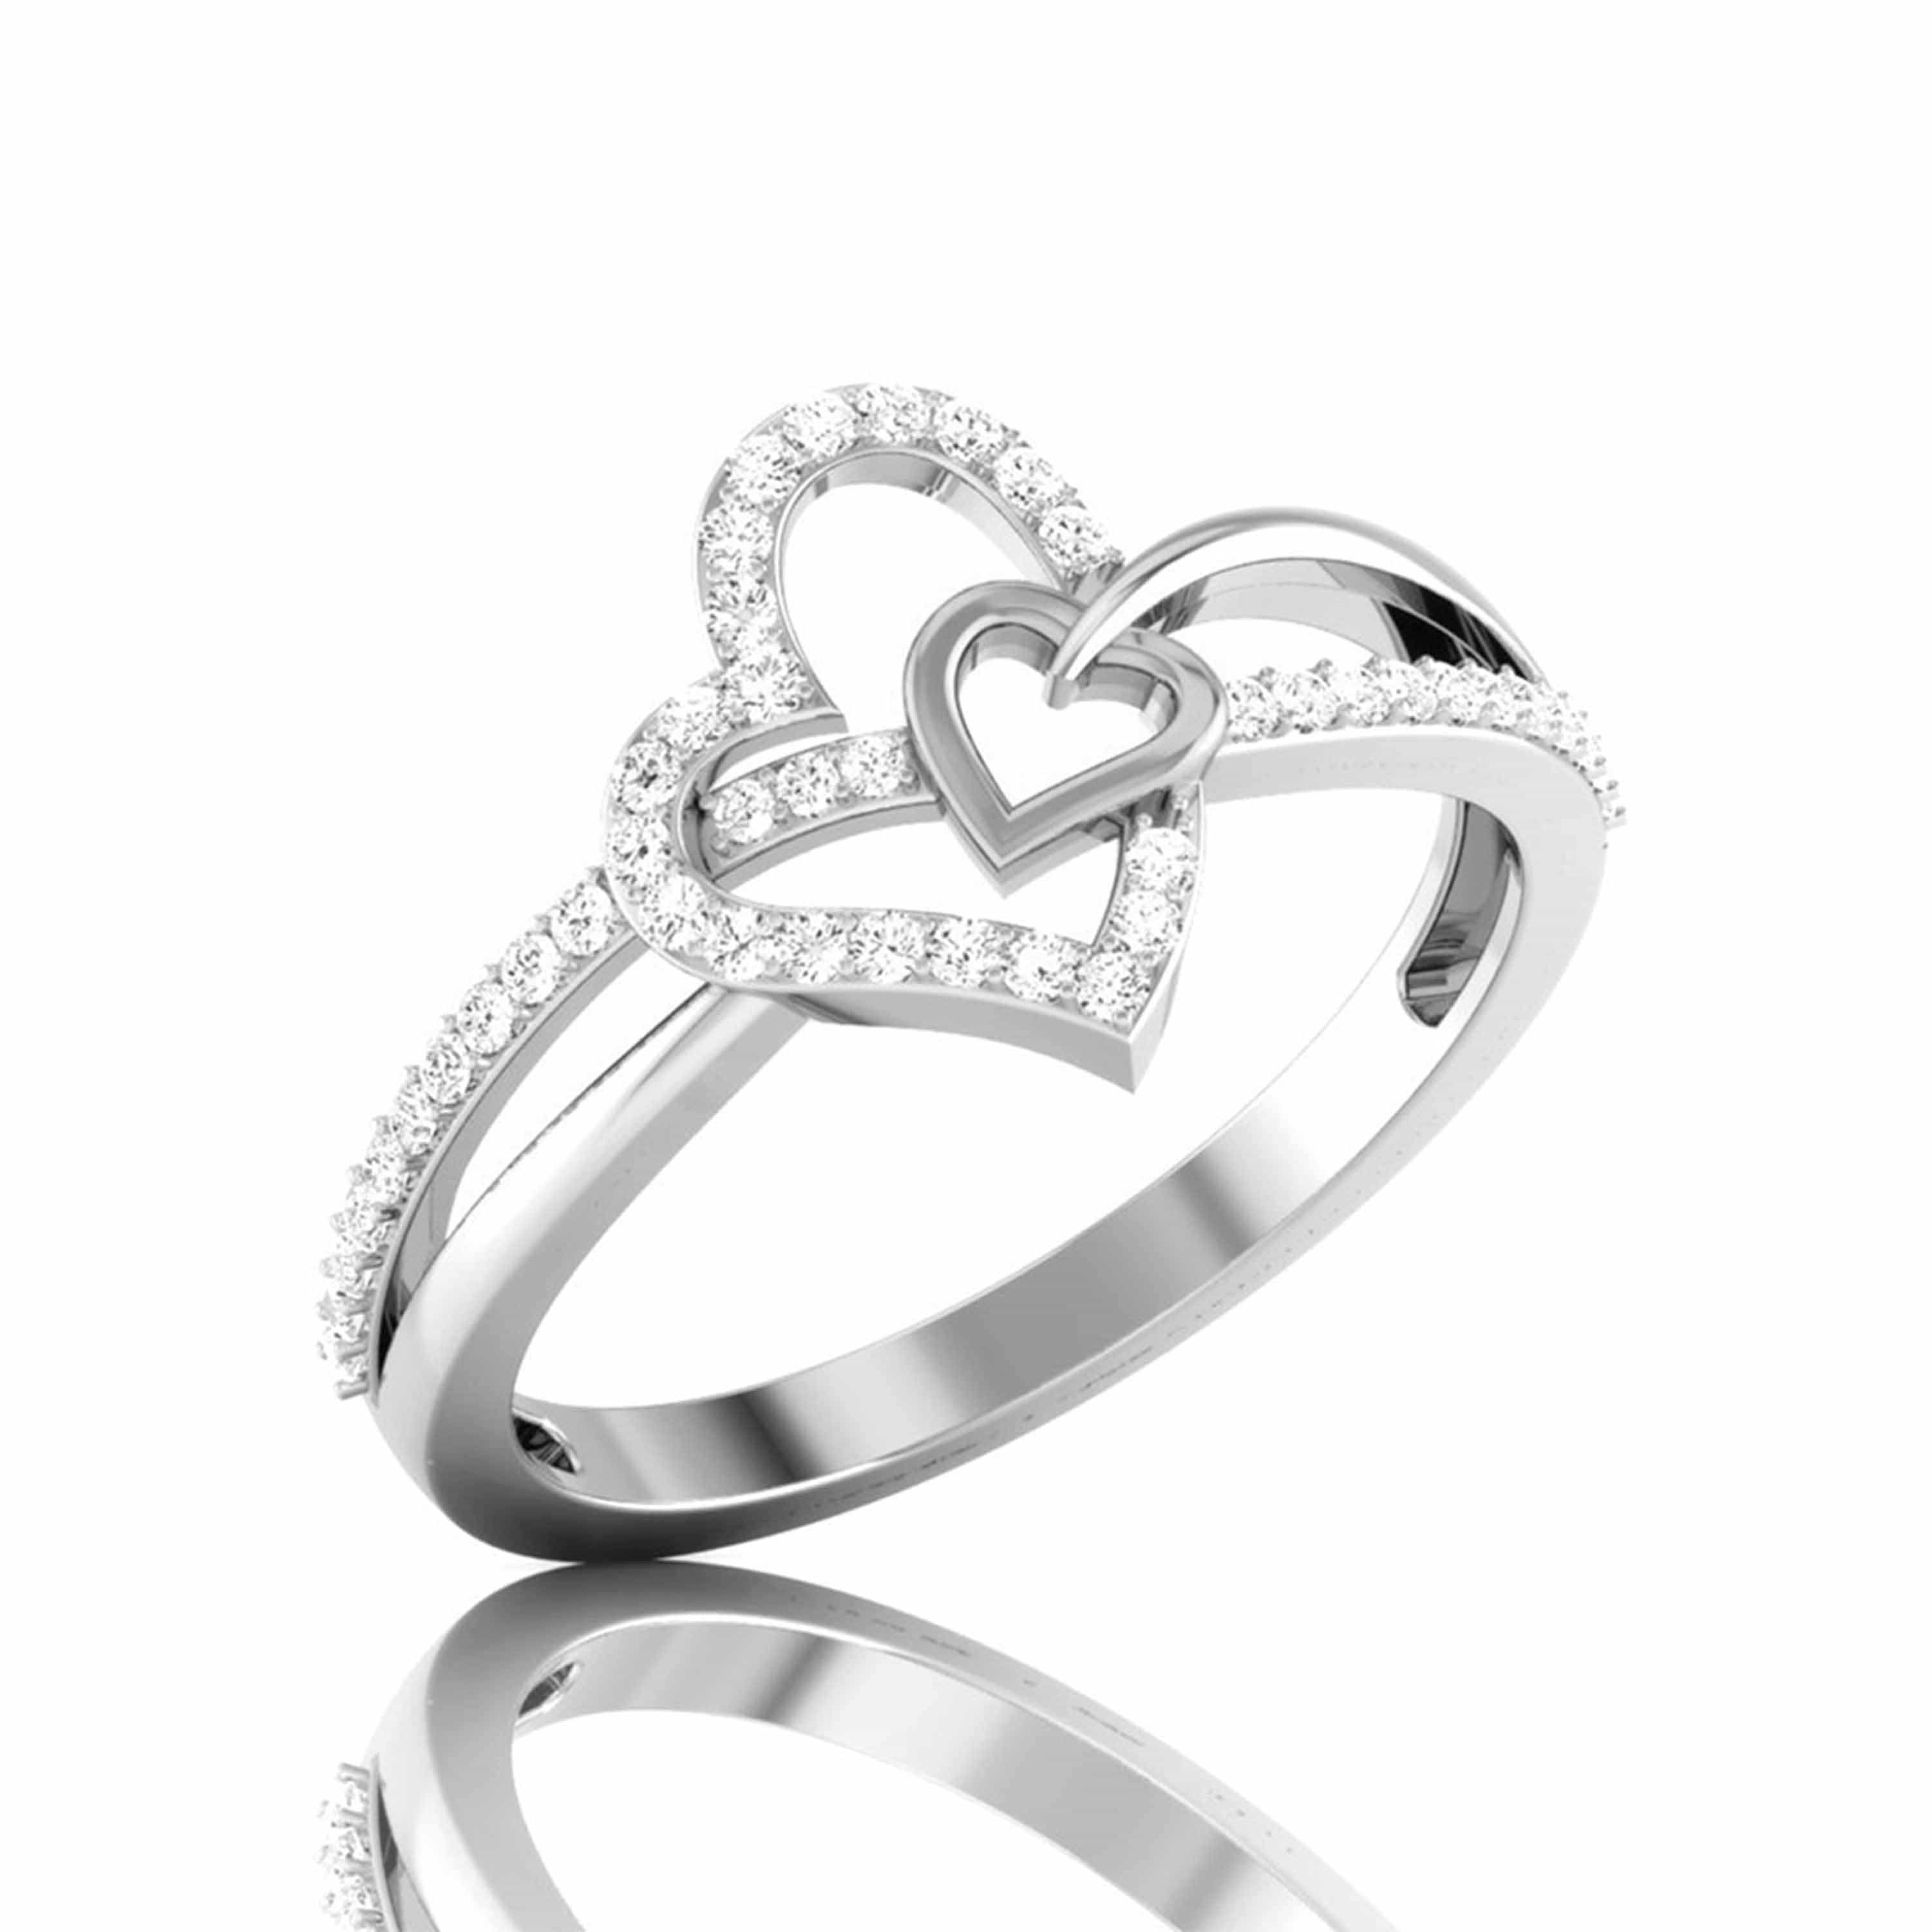 Buy GemsTech 2 Carat Diamond Ring Original Certified Precious Diamond Ring  For Women & Girls Heere Ki Anguthi Chandi Ki Anguthi Round Cut Heera Ring  डायमंड रिंग हीरे की अंगूठी at Amazon.in